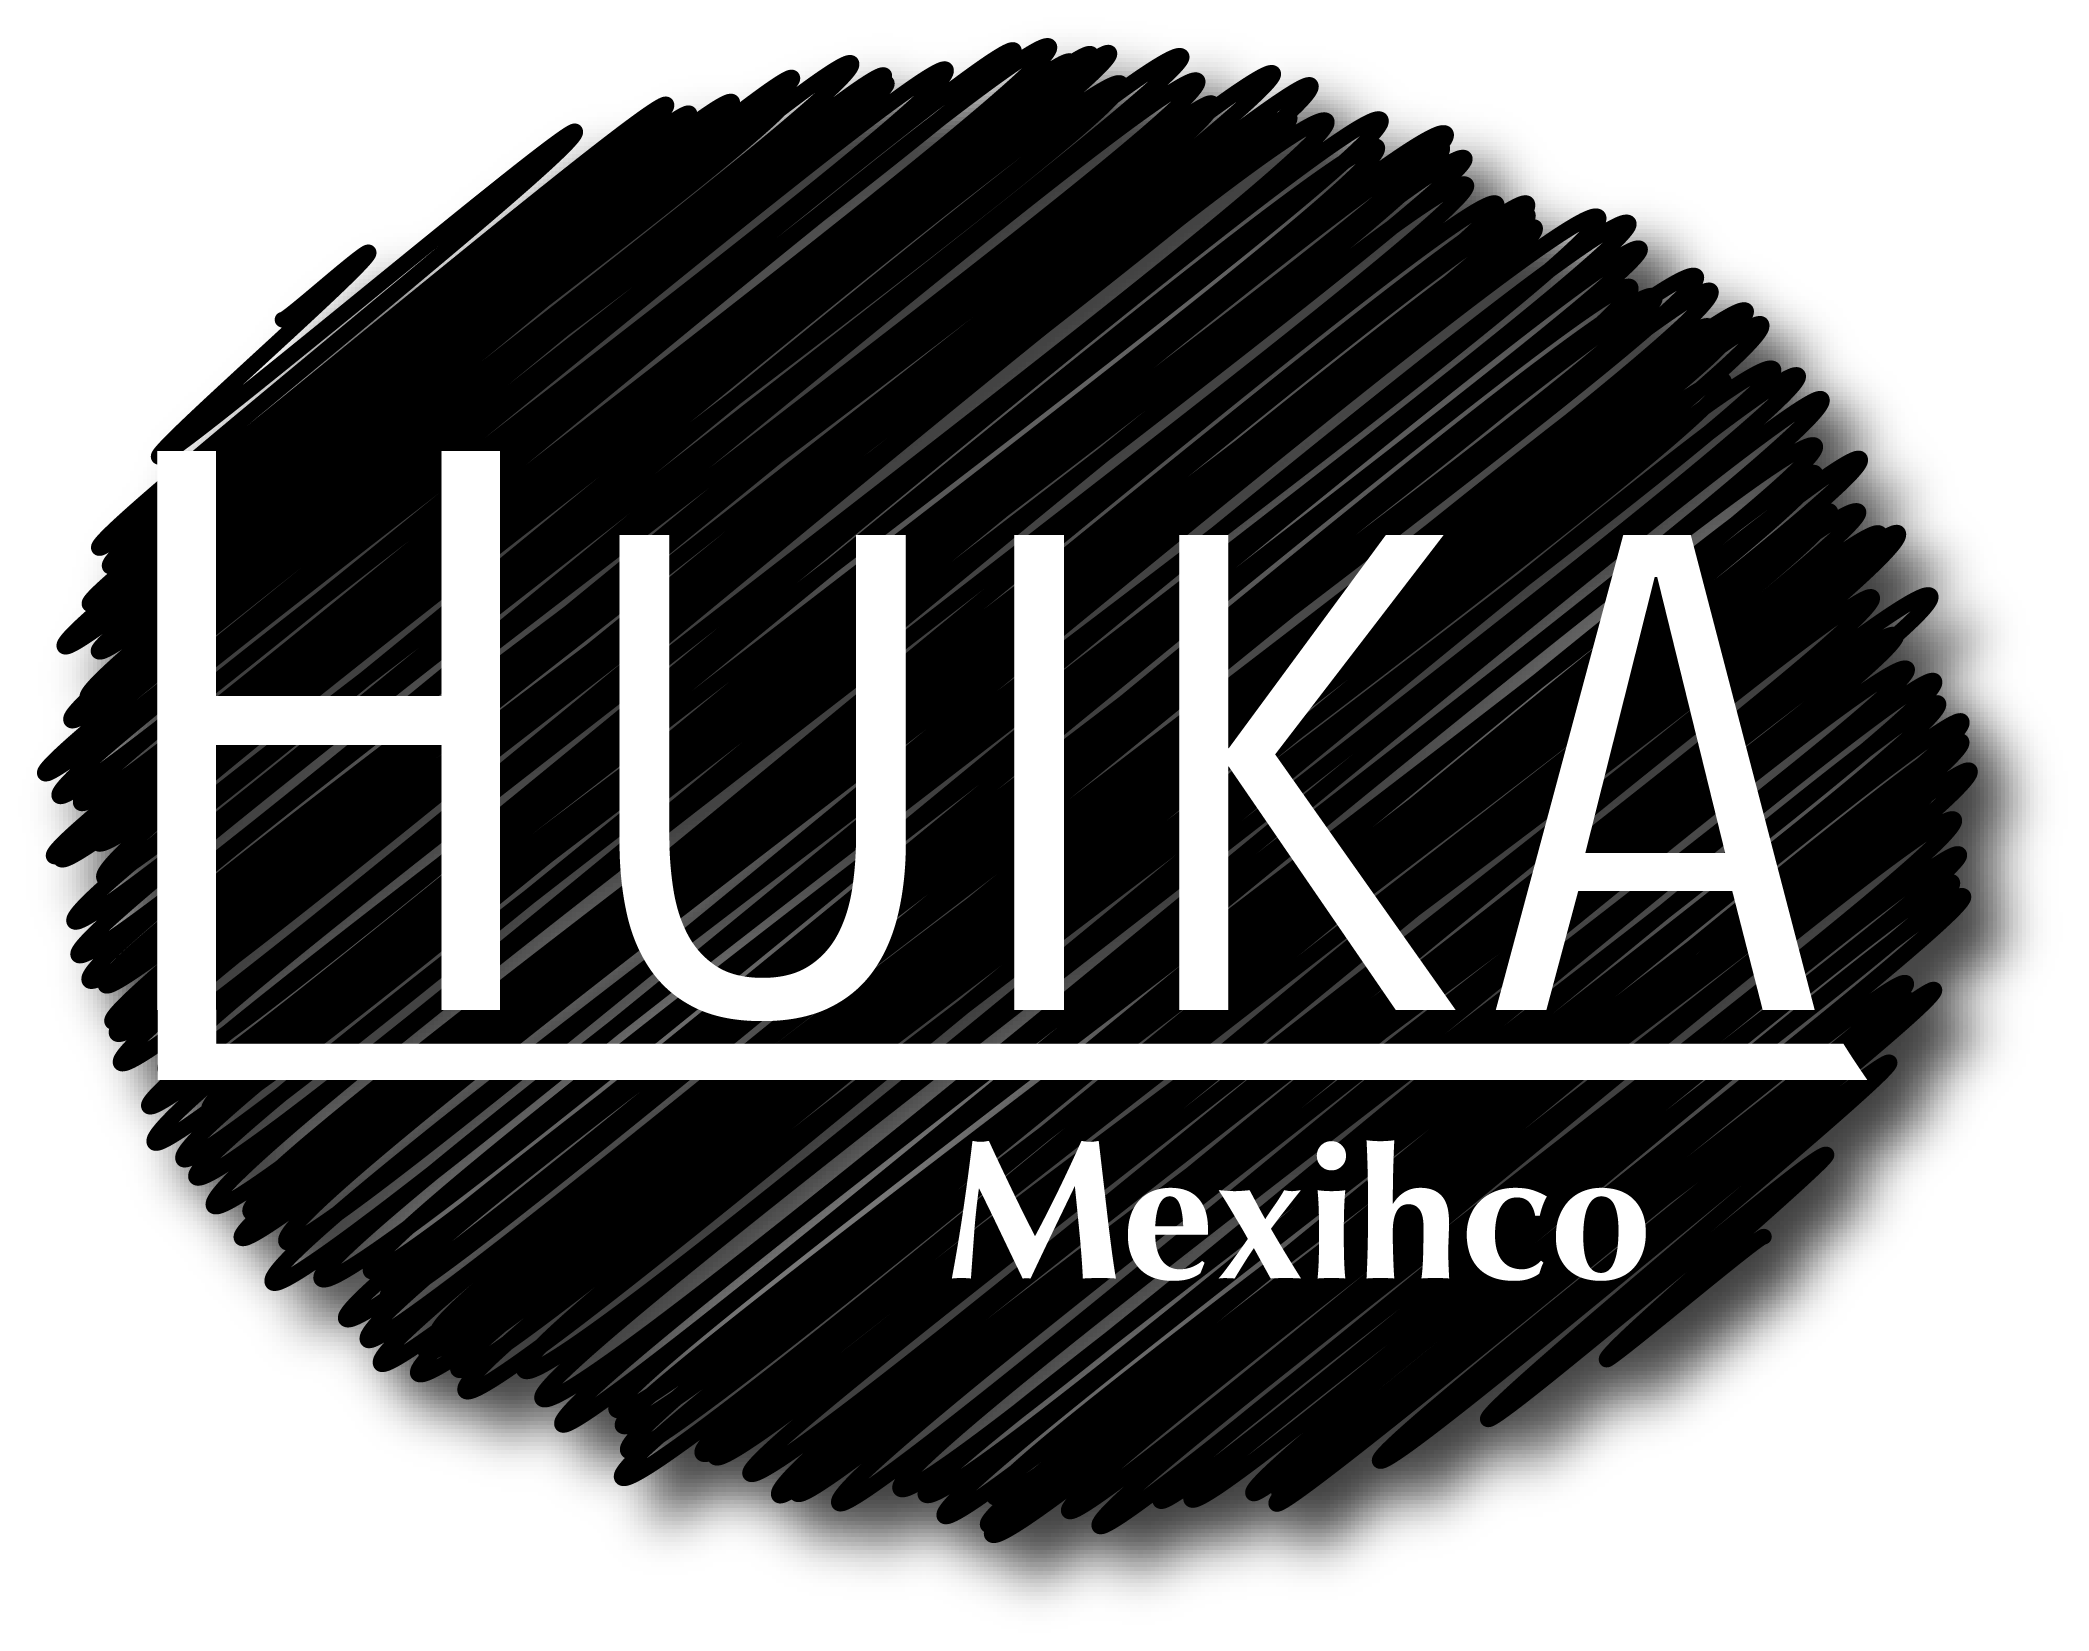 Huika Mexihco